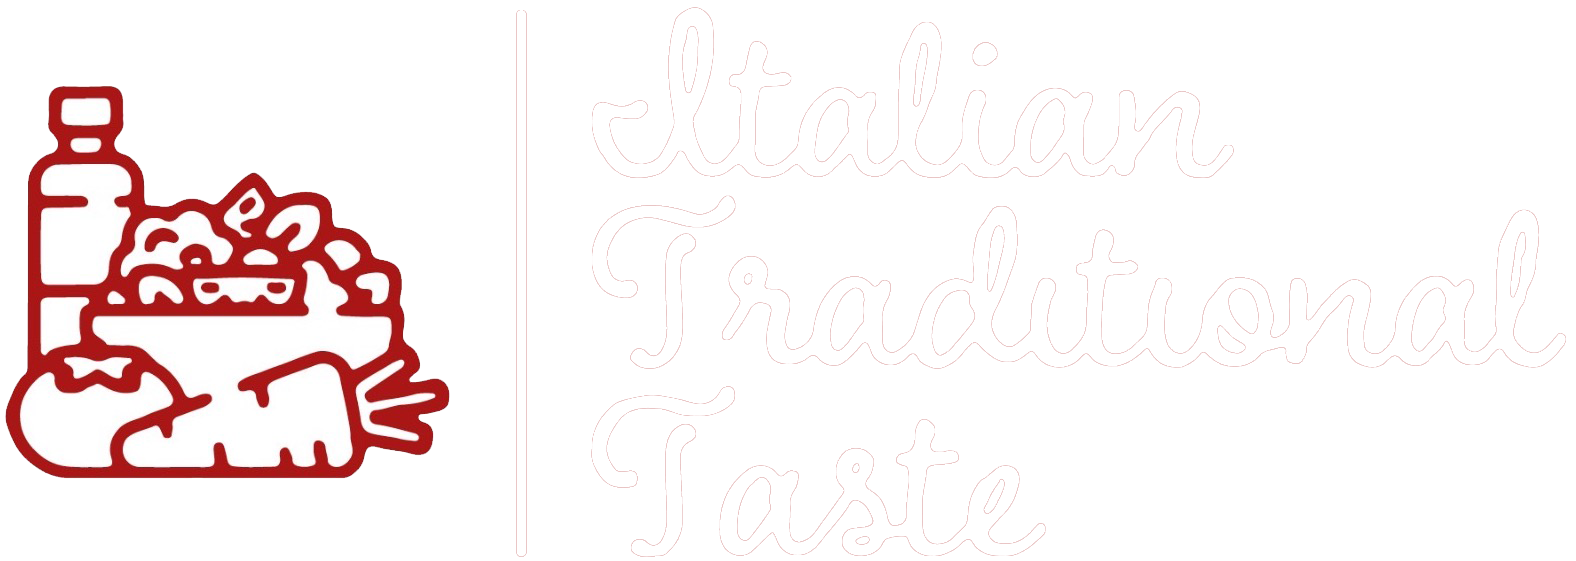 Italian Traditional Taste